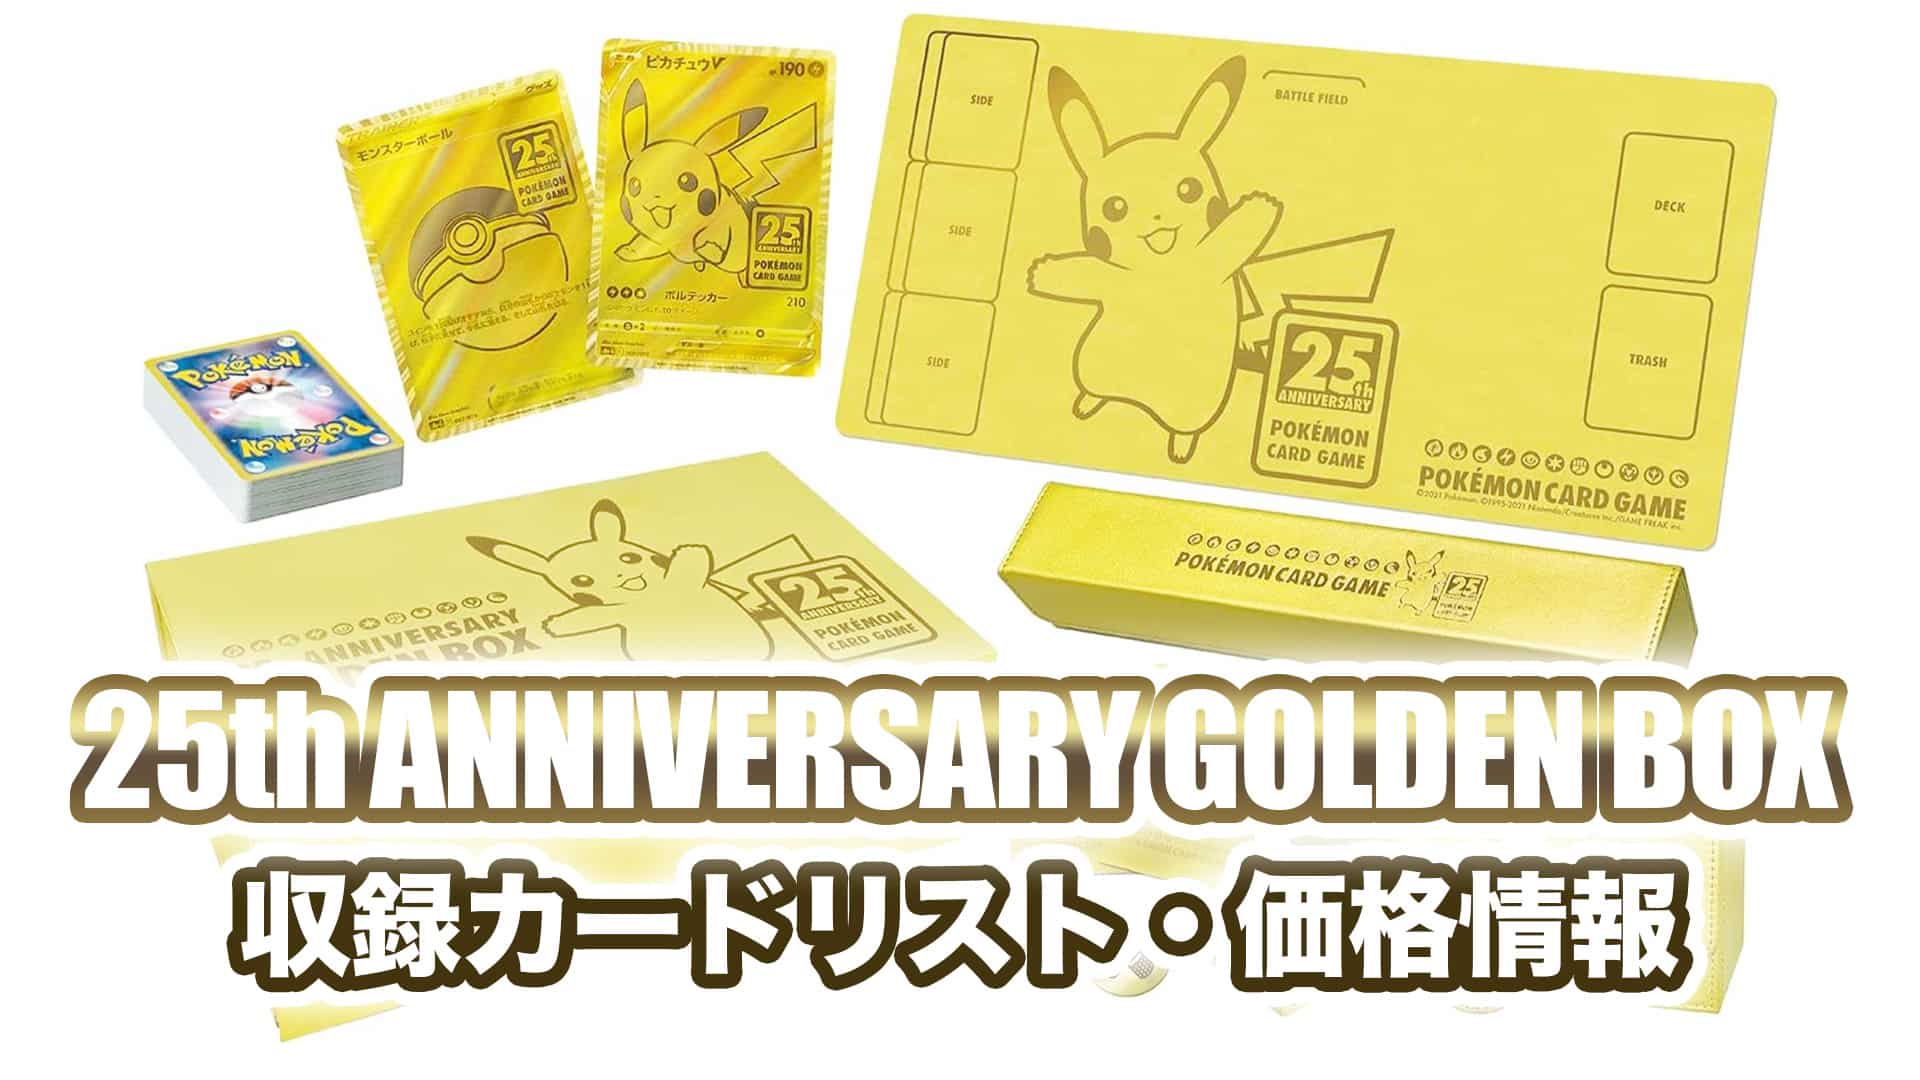 ポイントキャンペーン中 ポケモンカード 25th ANNIVERSARY GOLDEN BOX 